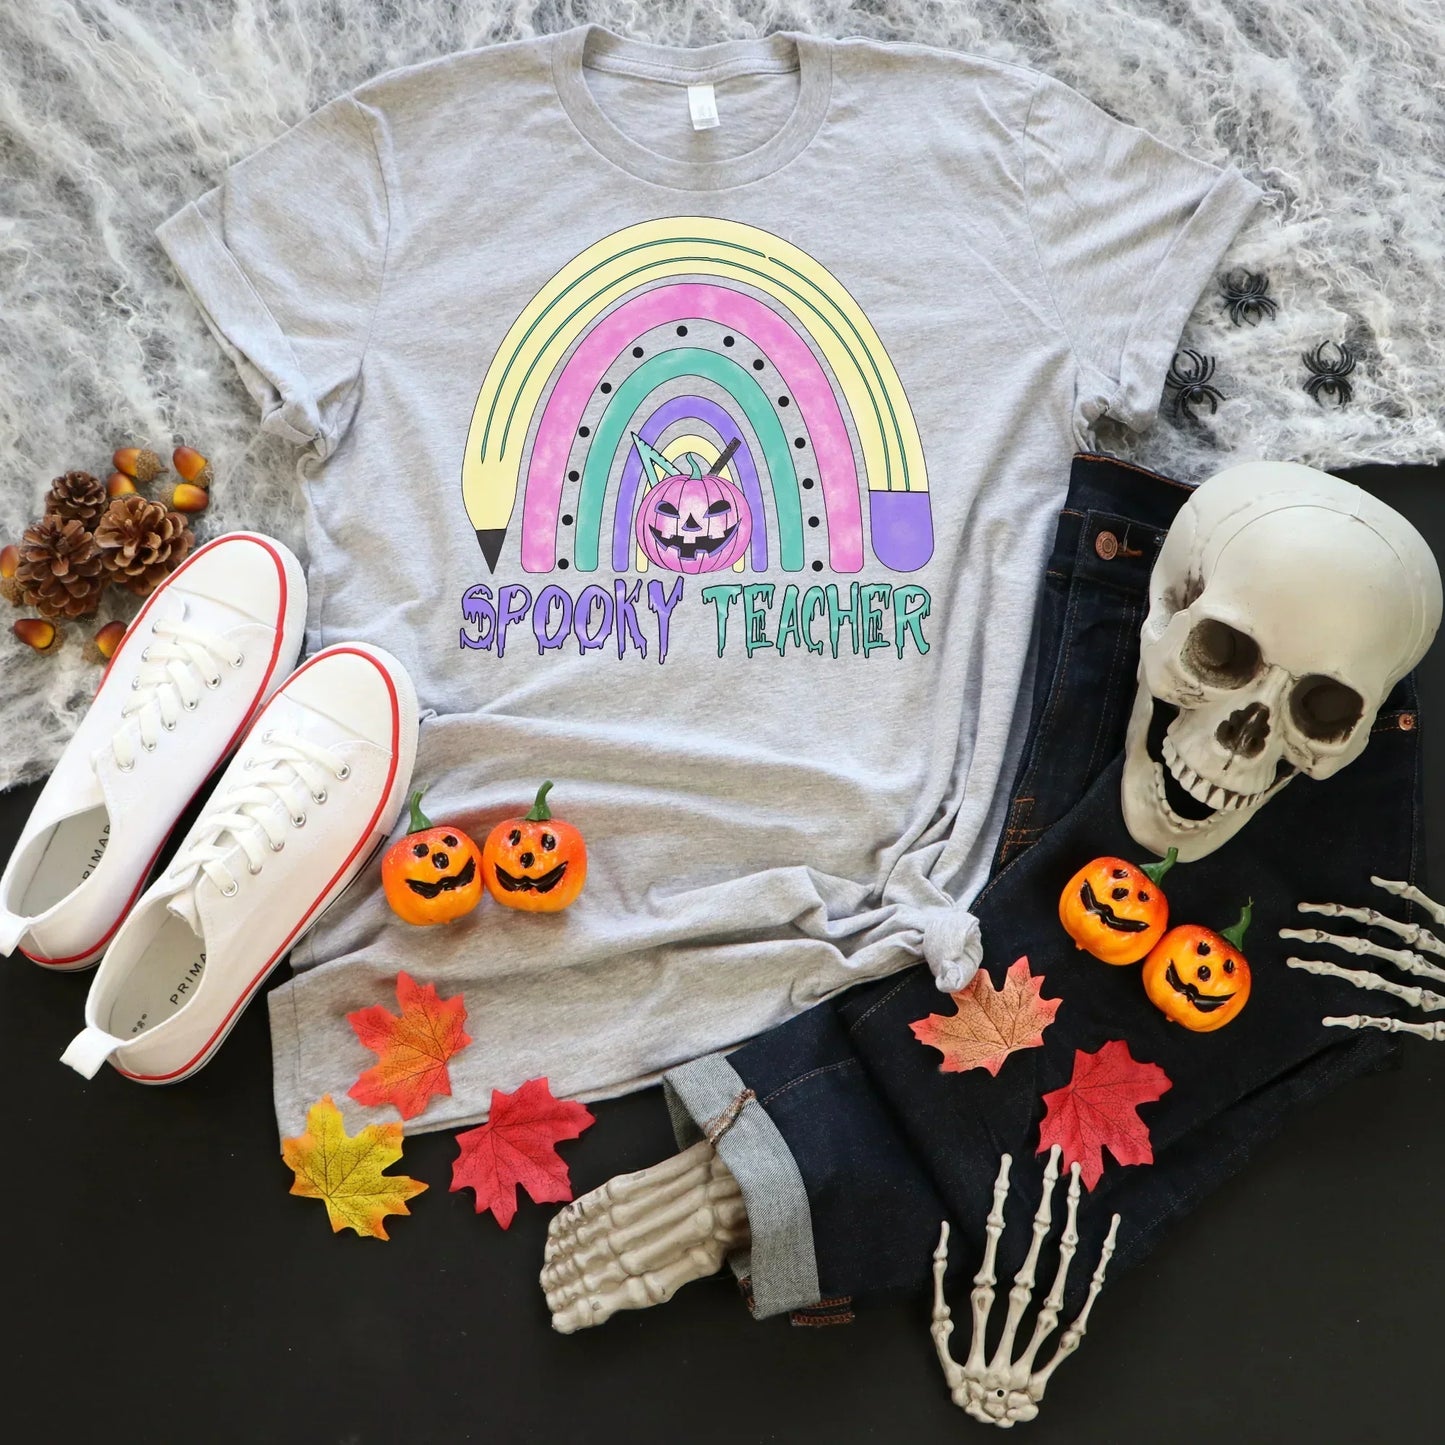 Halloween Teacher Shirt, Spooky Teacher Halloween Ghost Shirt